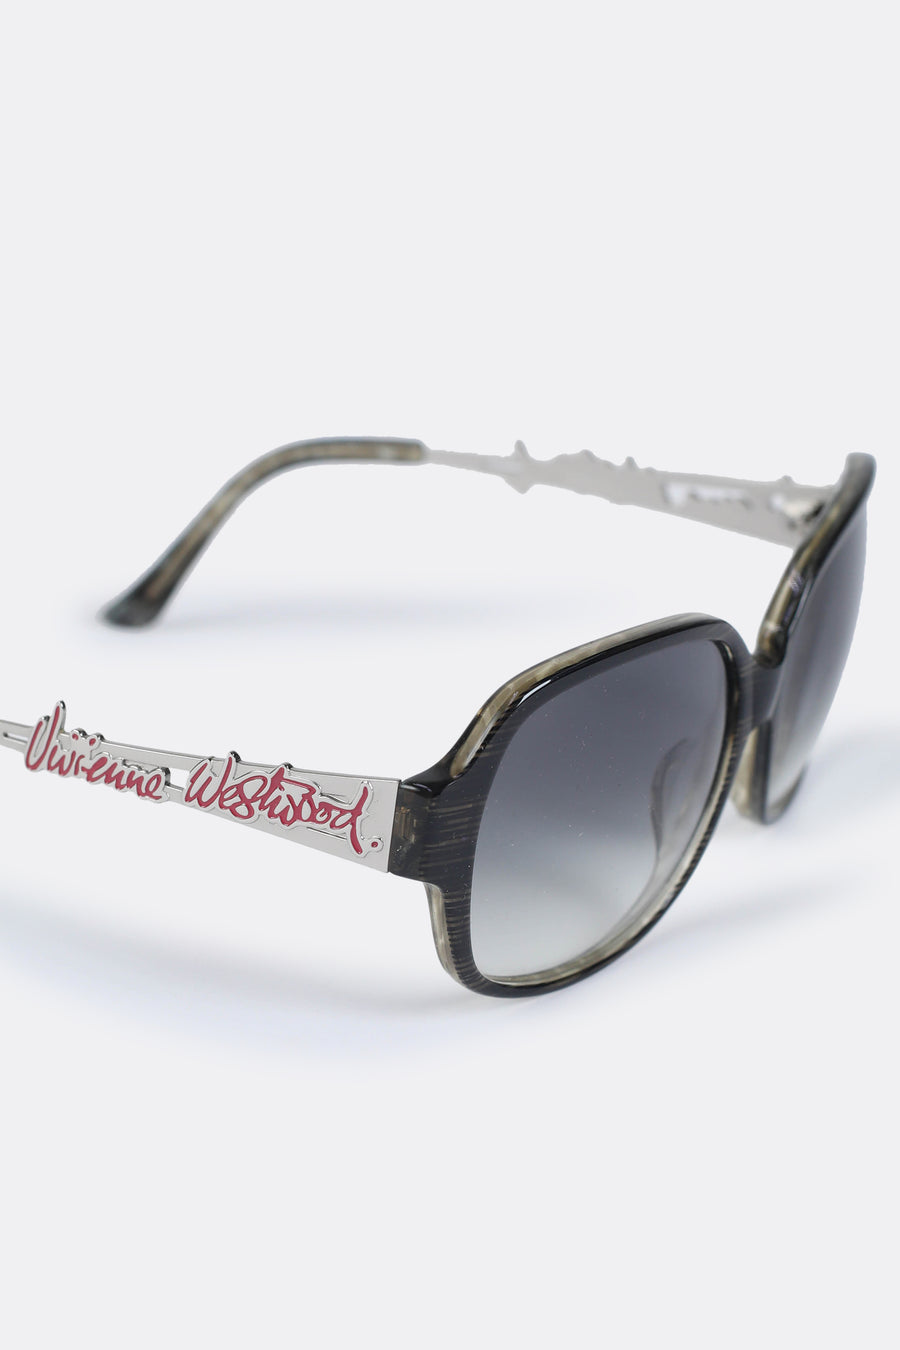 Vintage Vivienne Westwood Sunglasses